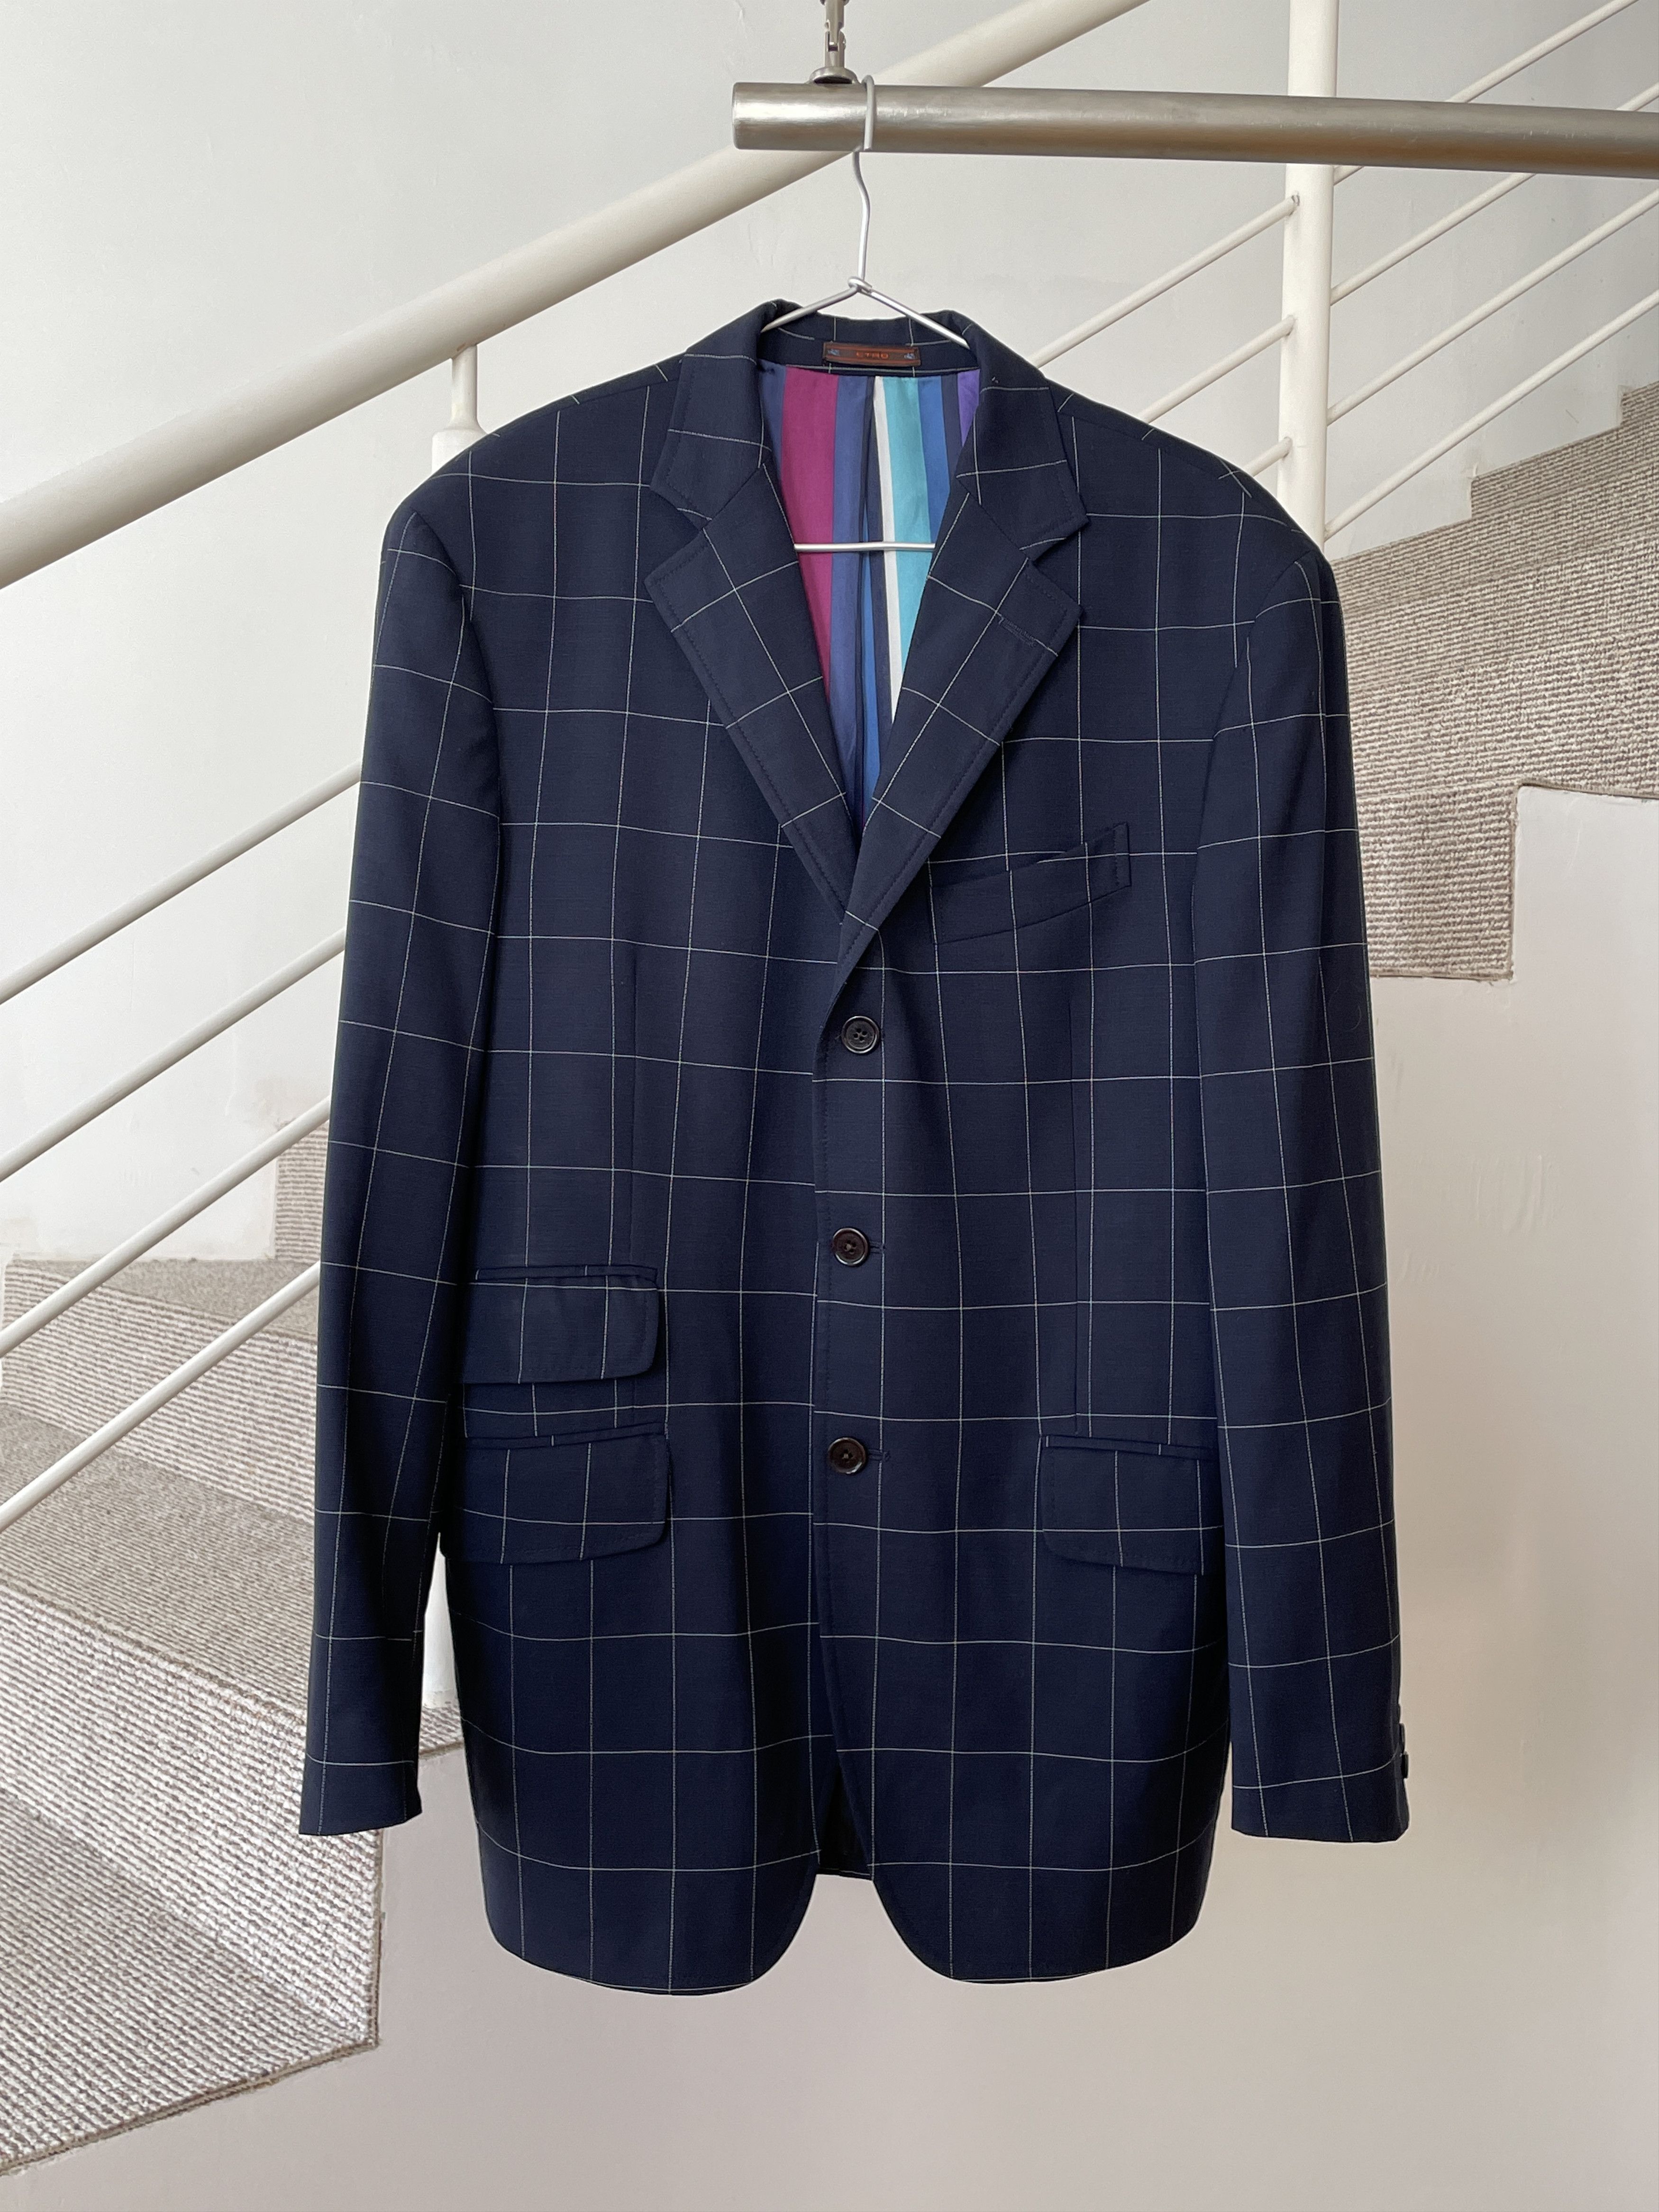 Etro ETRO Jacket Coat Blazer Trousers Suit Plaid Wool A7923 Size 40R - 3 Thumbnail